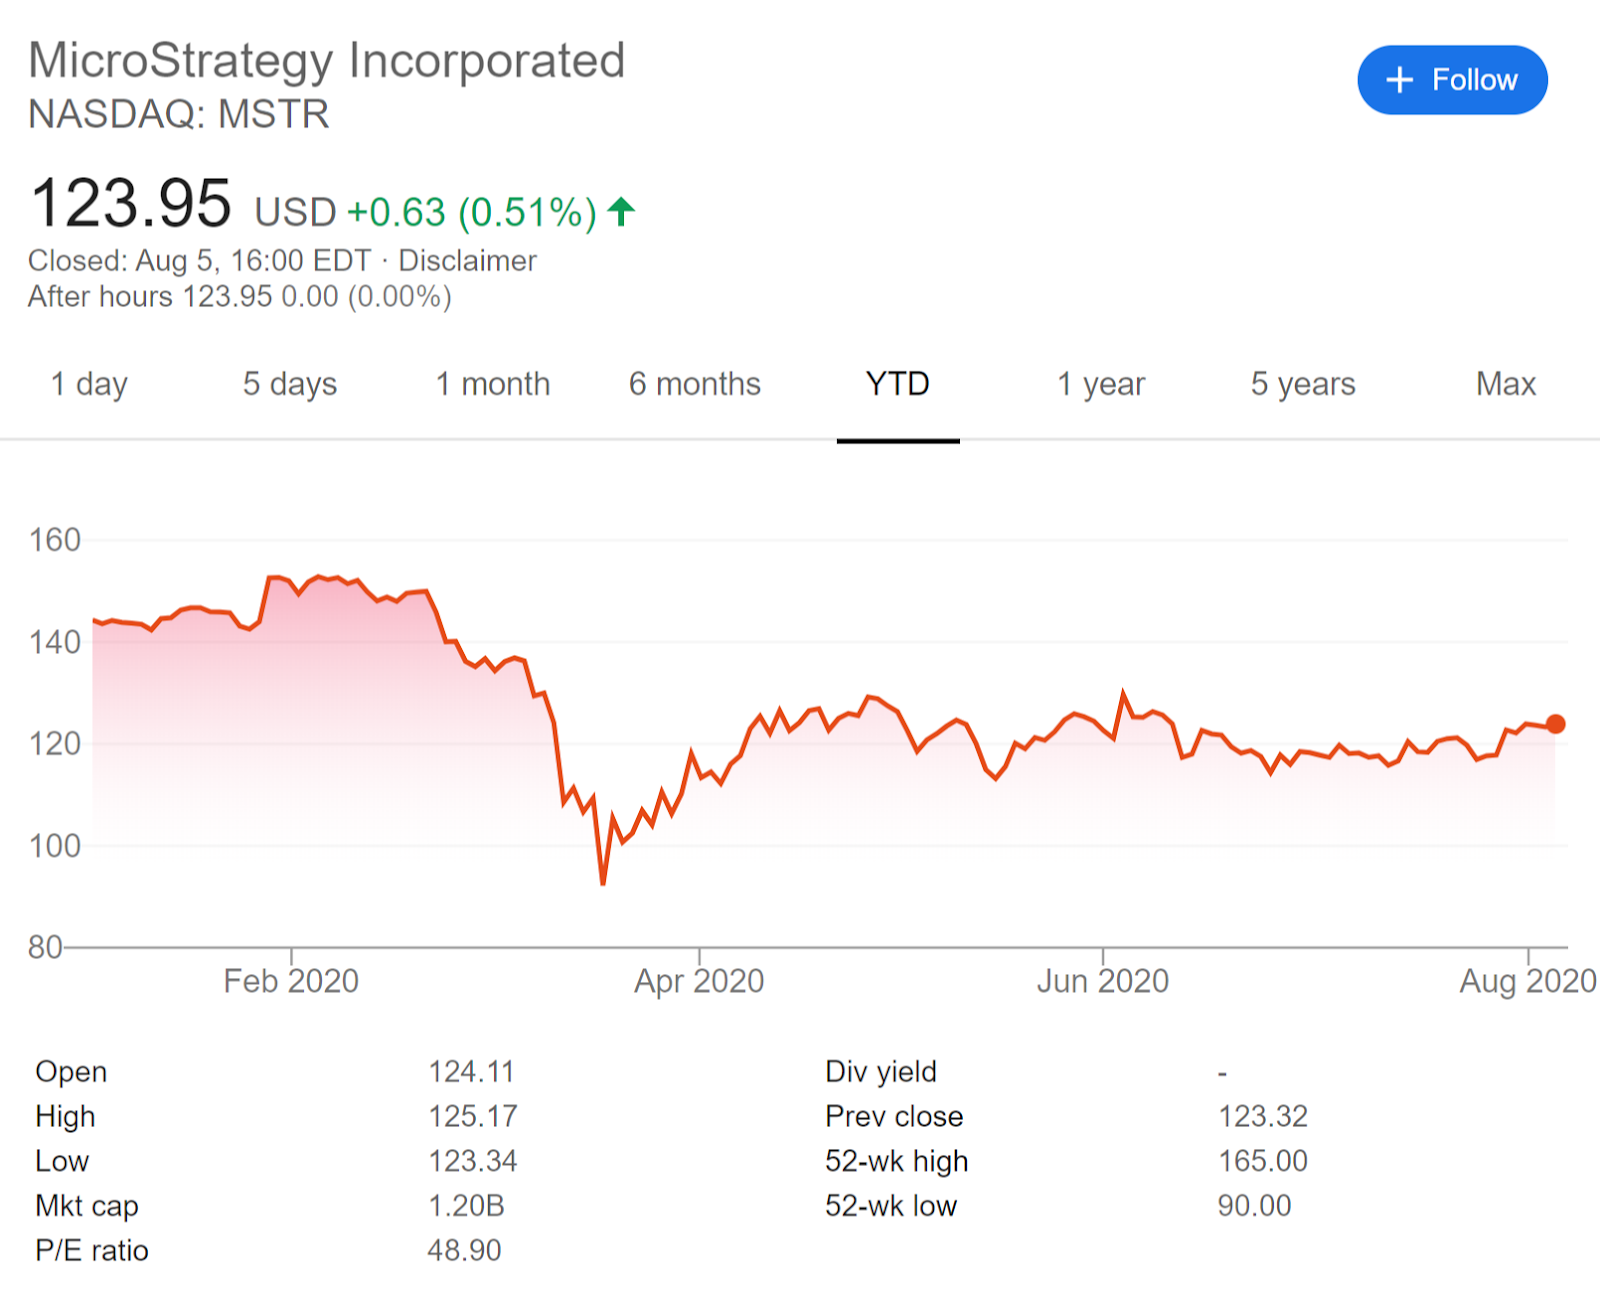 Bagan yang menggambarkan harga saham year-to-date dari MicroStrategy Incorporated. Sumber: Google